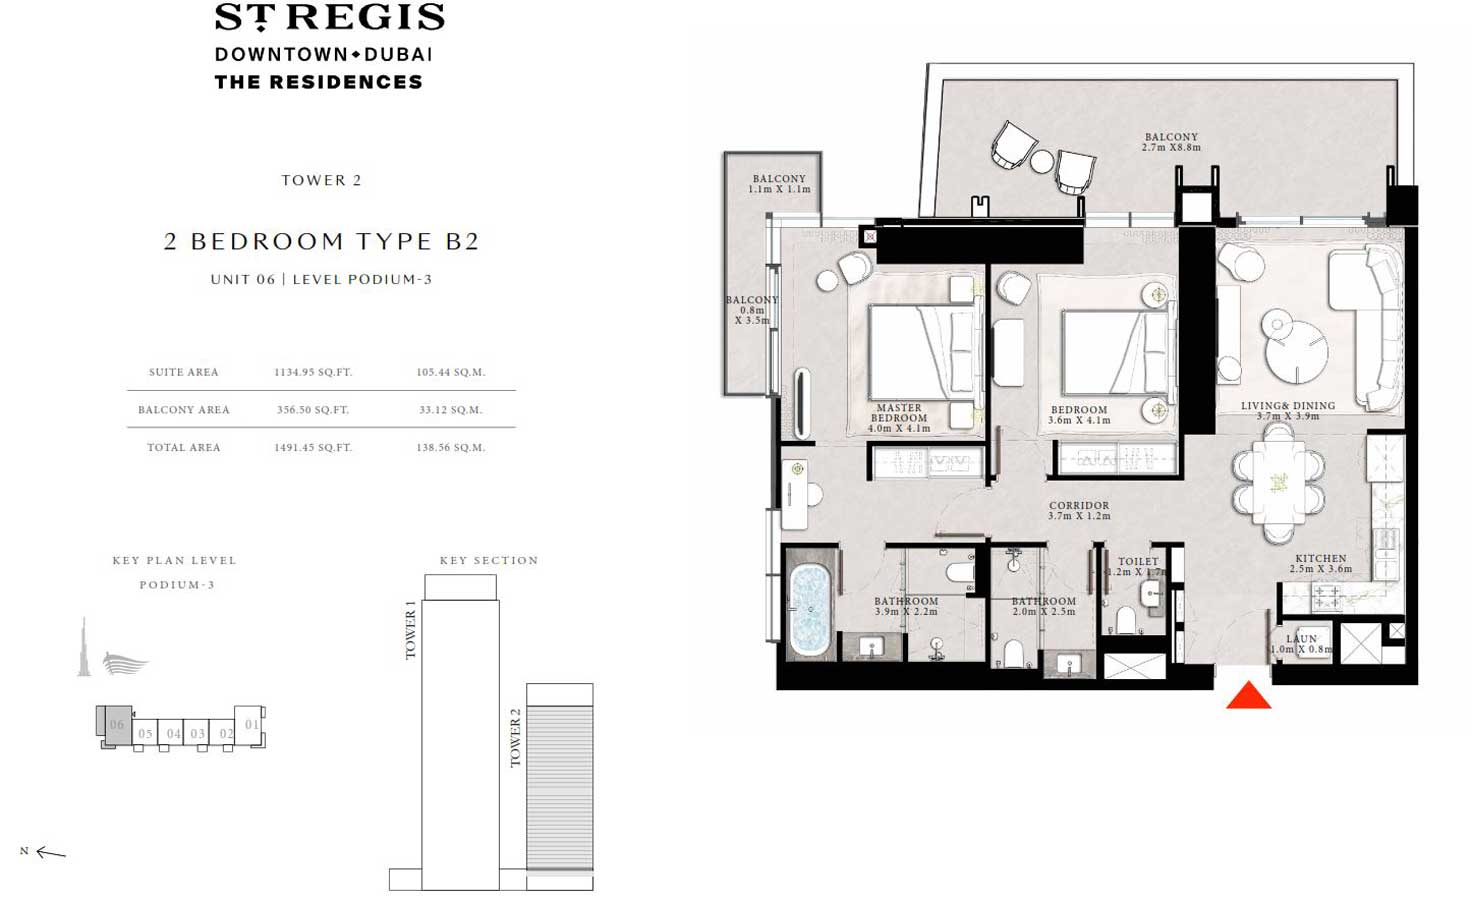 emaar-st-regis-2-bedroom-floor-plan